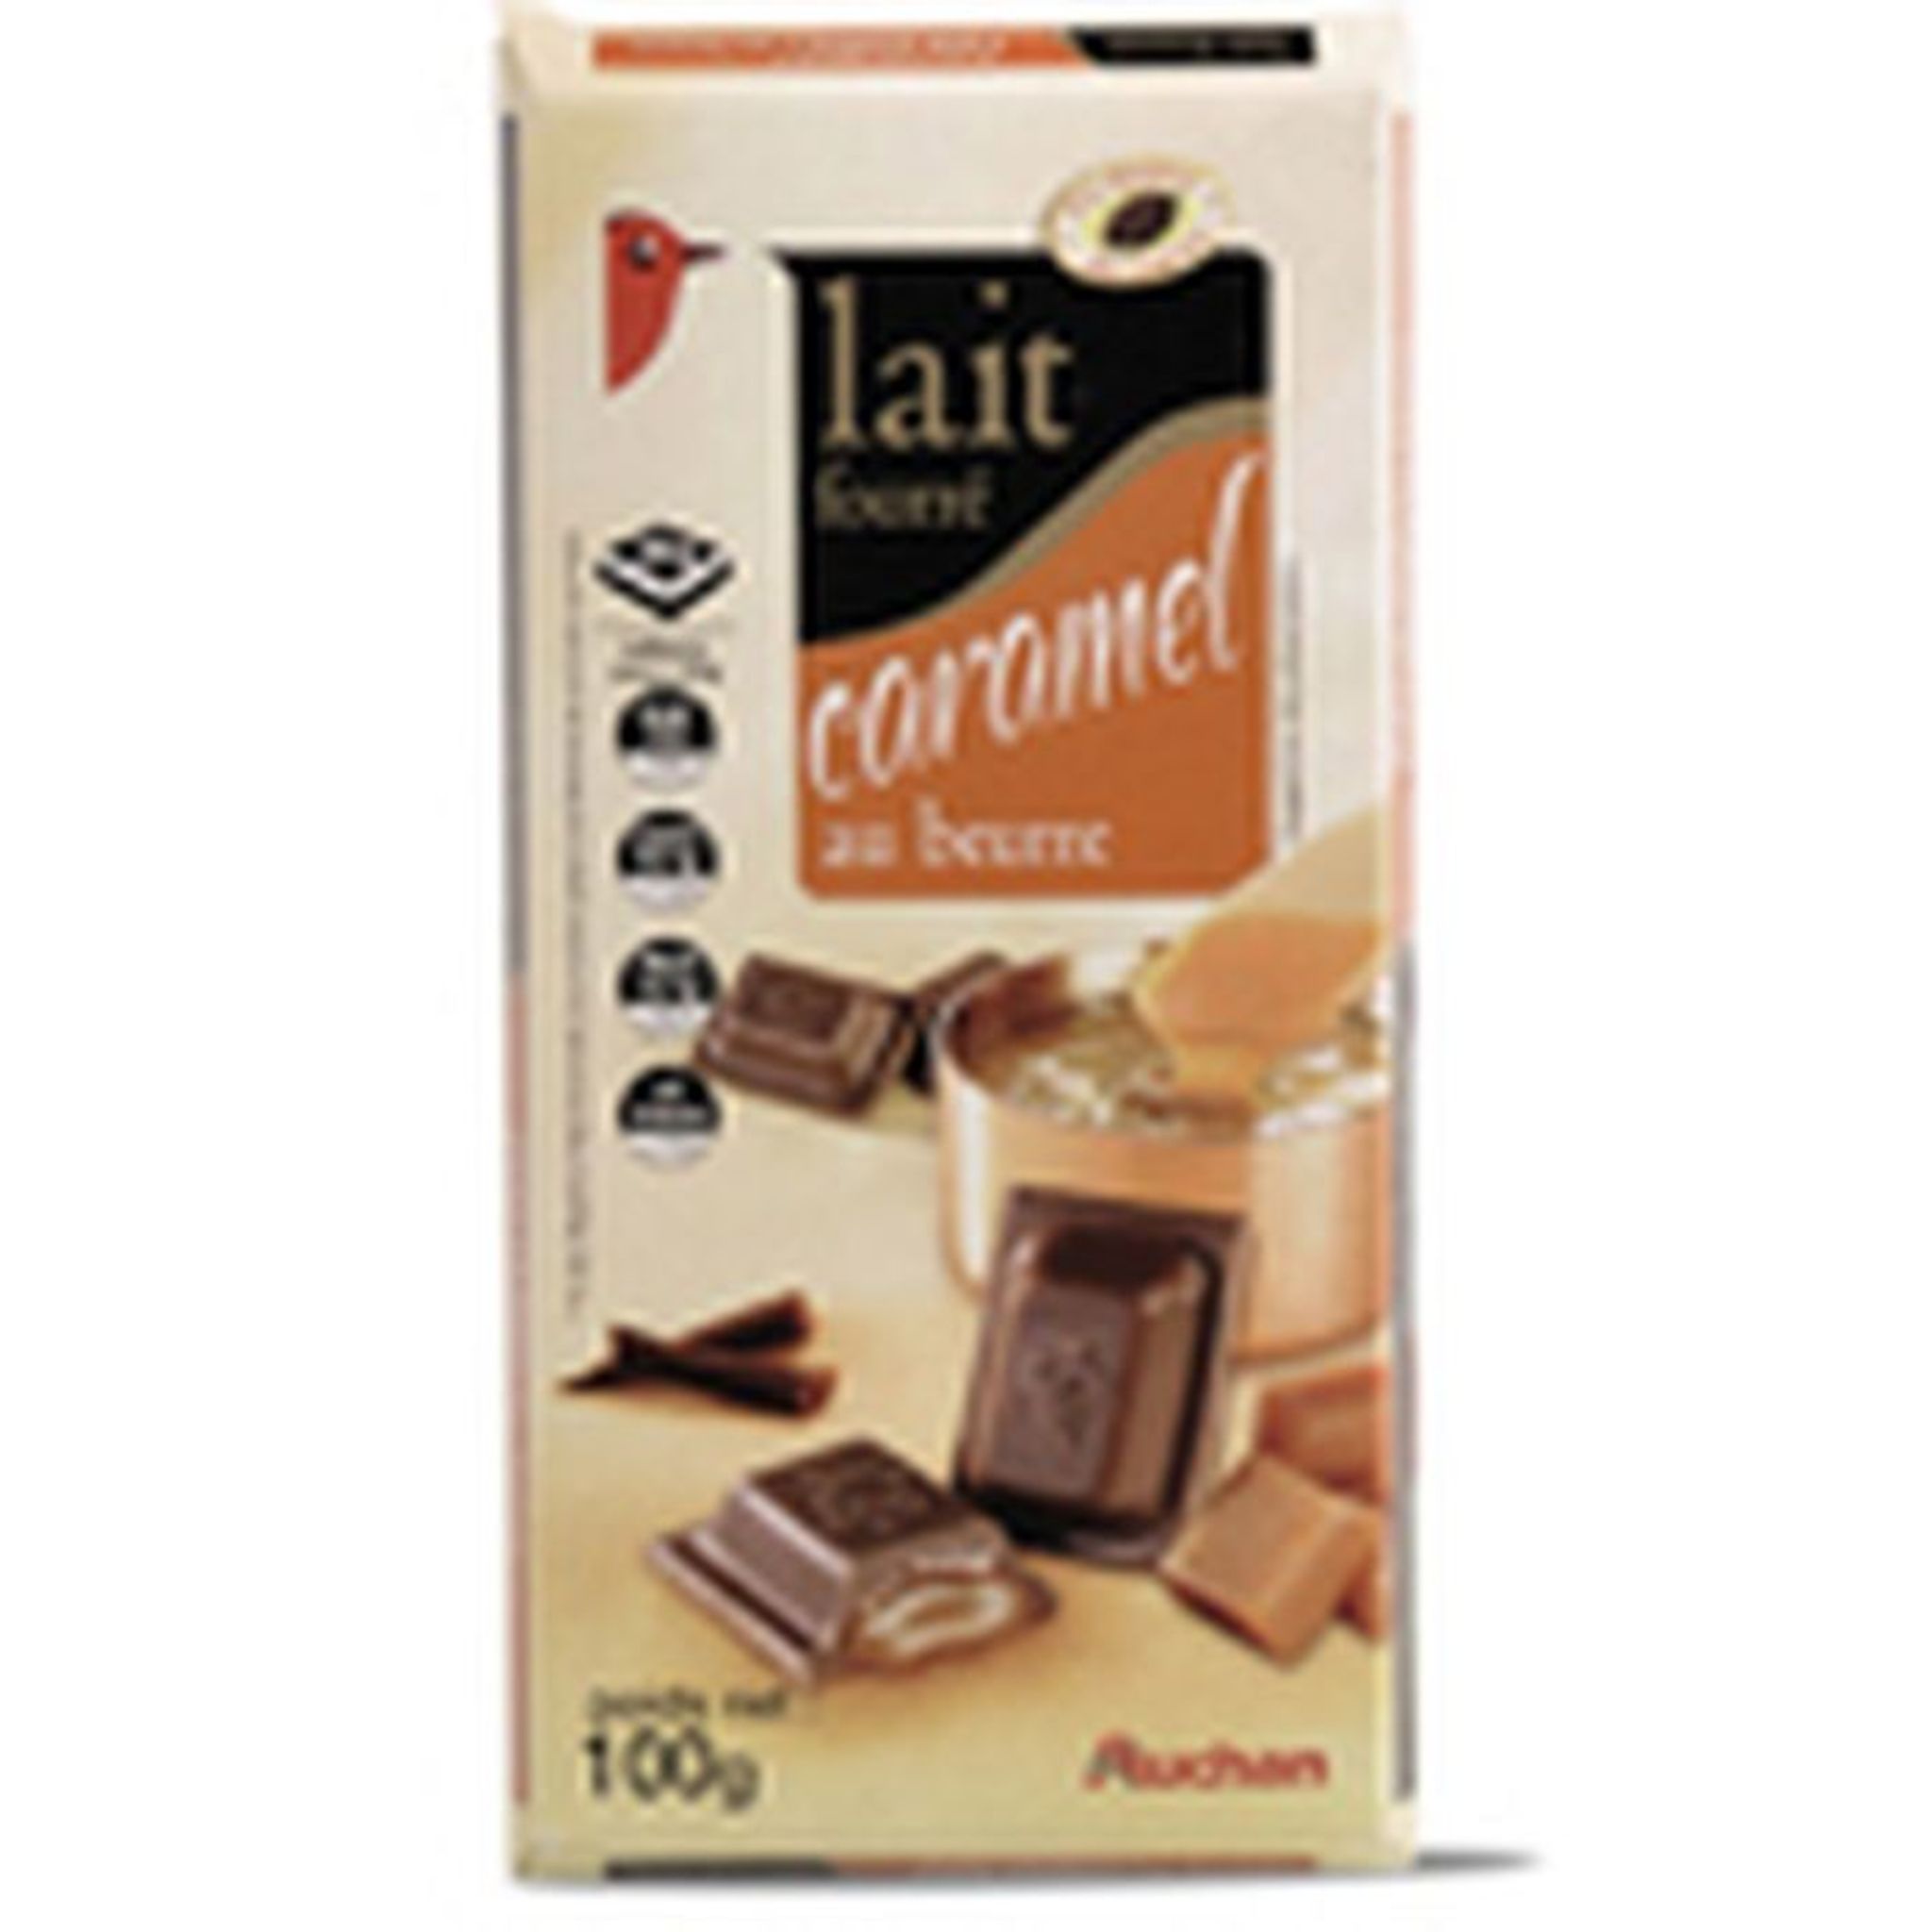 Tablette de chocolat au lait fourré caramel beurre salé, 150g